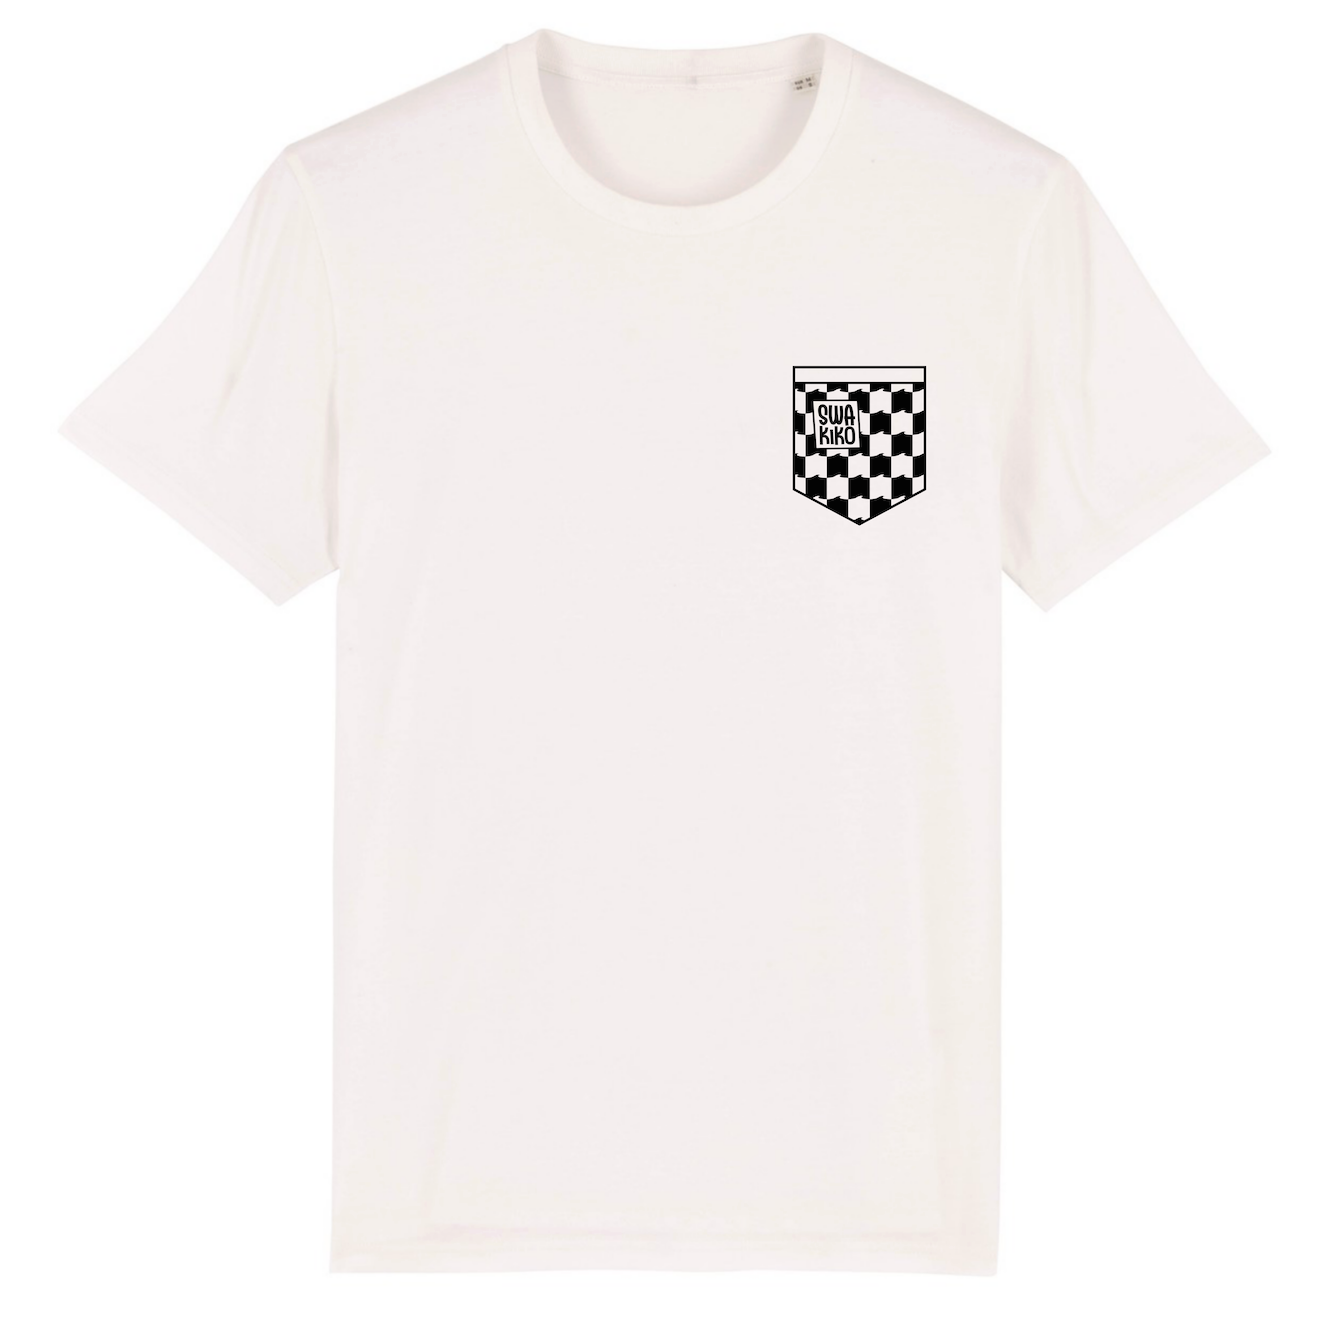 Wit T-shirt met Swakiko logo in zwart/wit geblokt borstzakje 